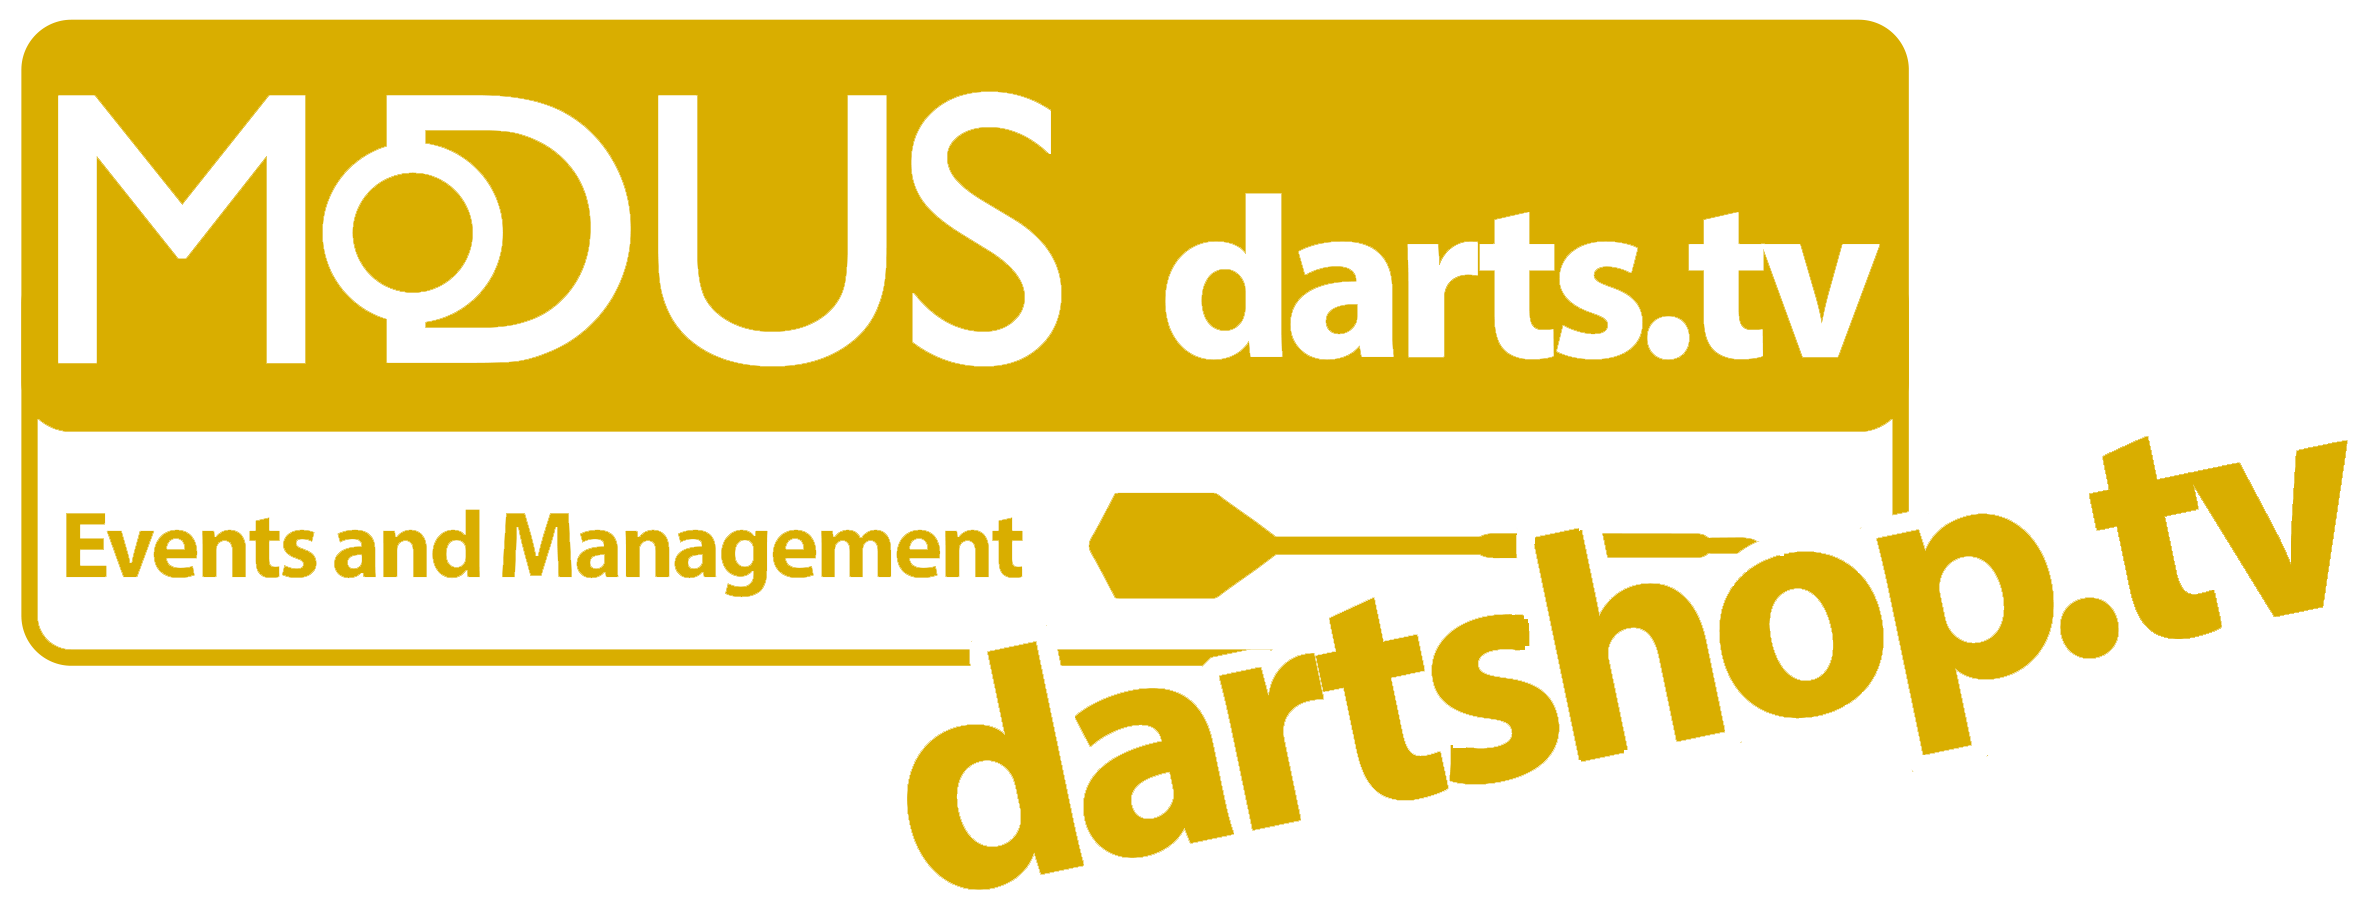 Dartshop.tv - Darts Tickets, Darts Clothing and Accessories